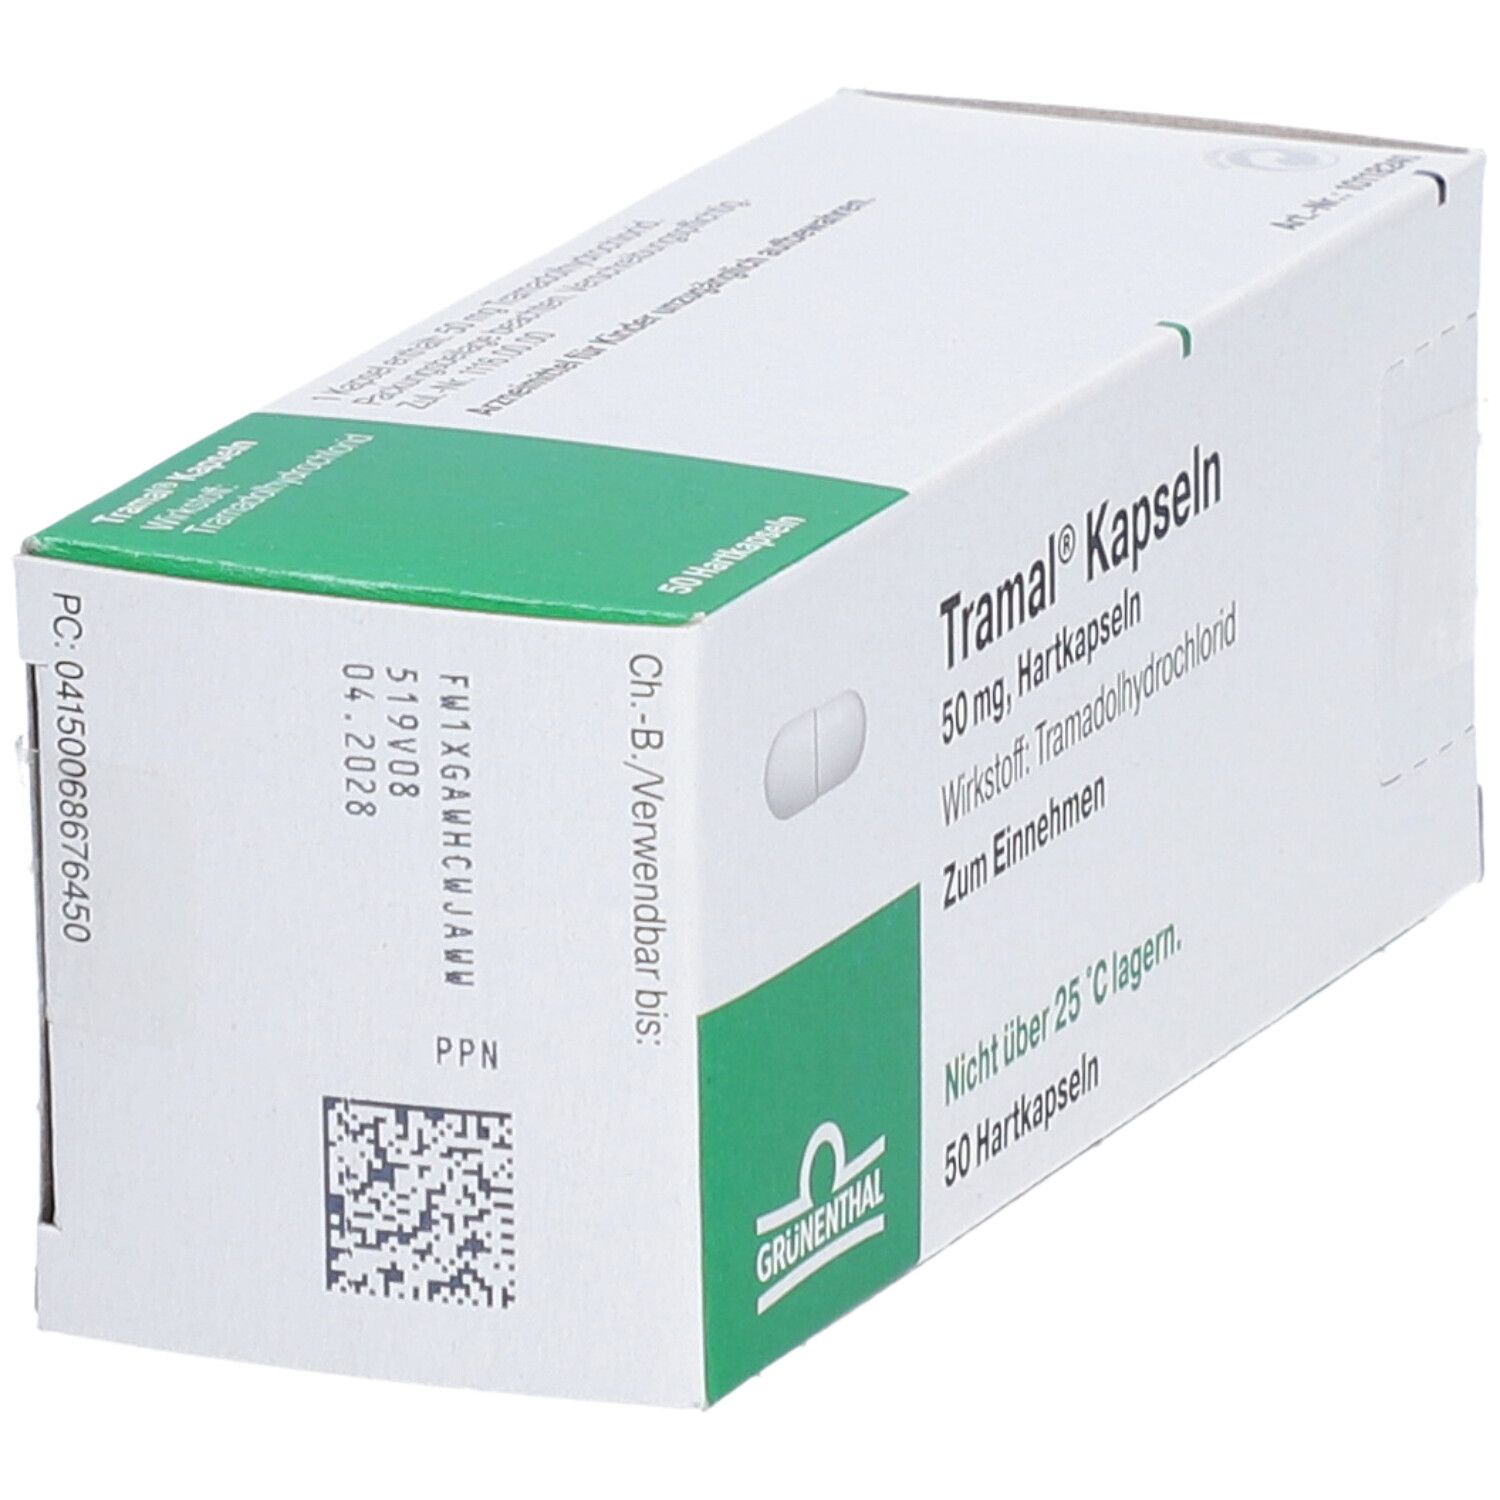 Tramal® Kapseln 50 mg